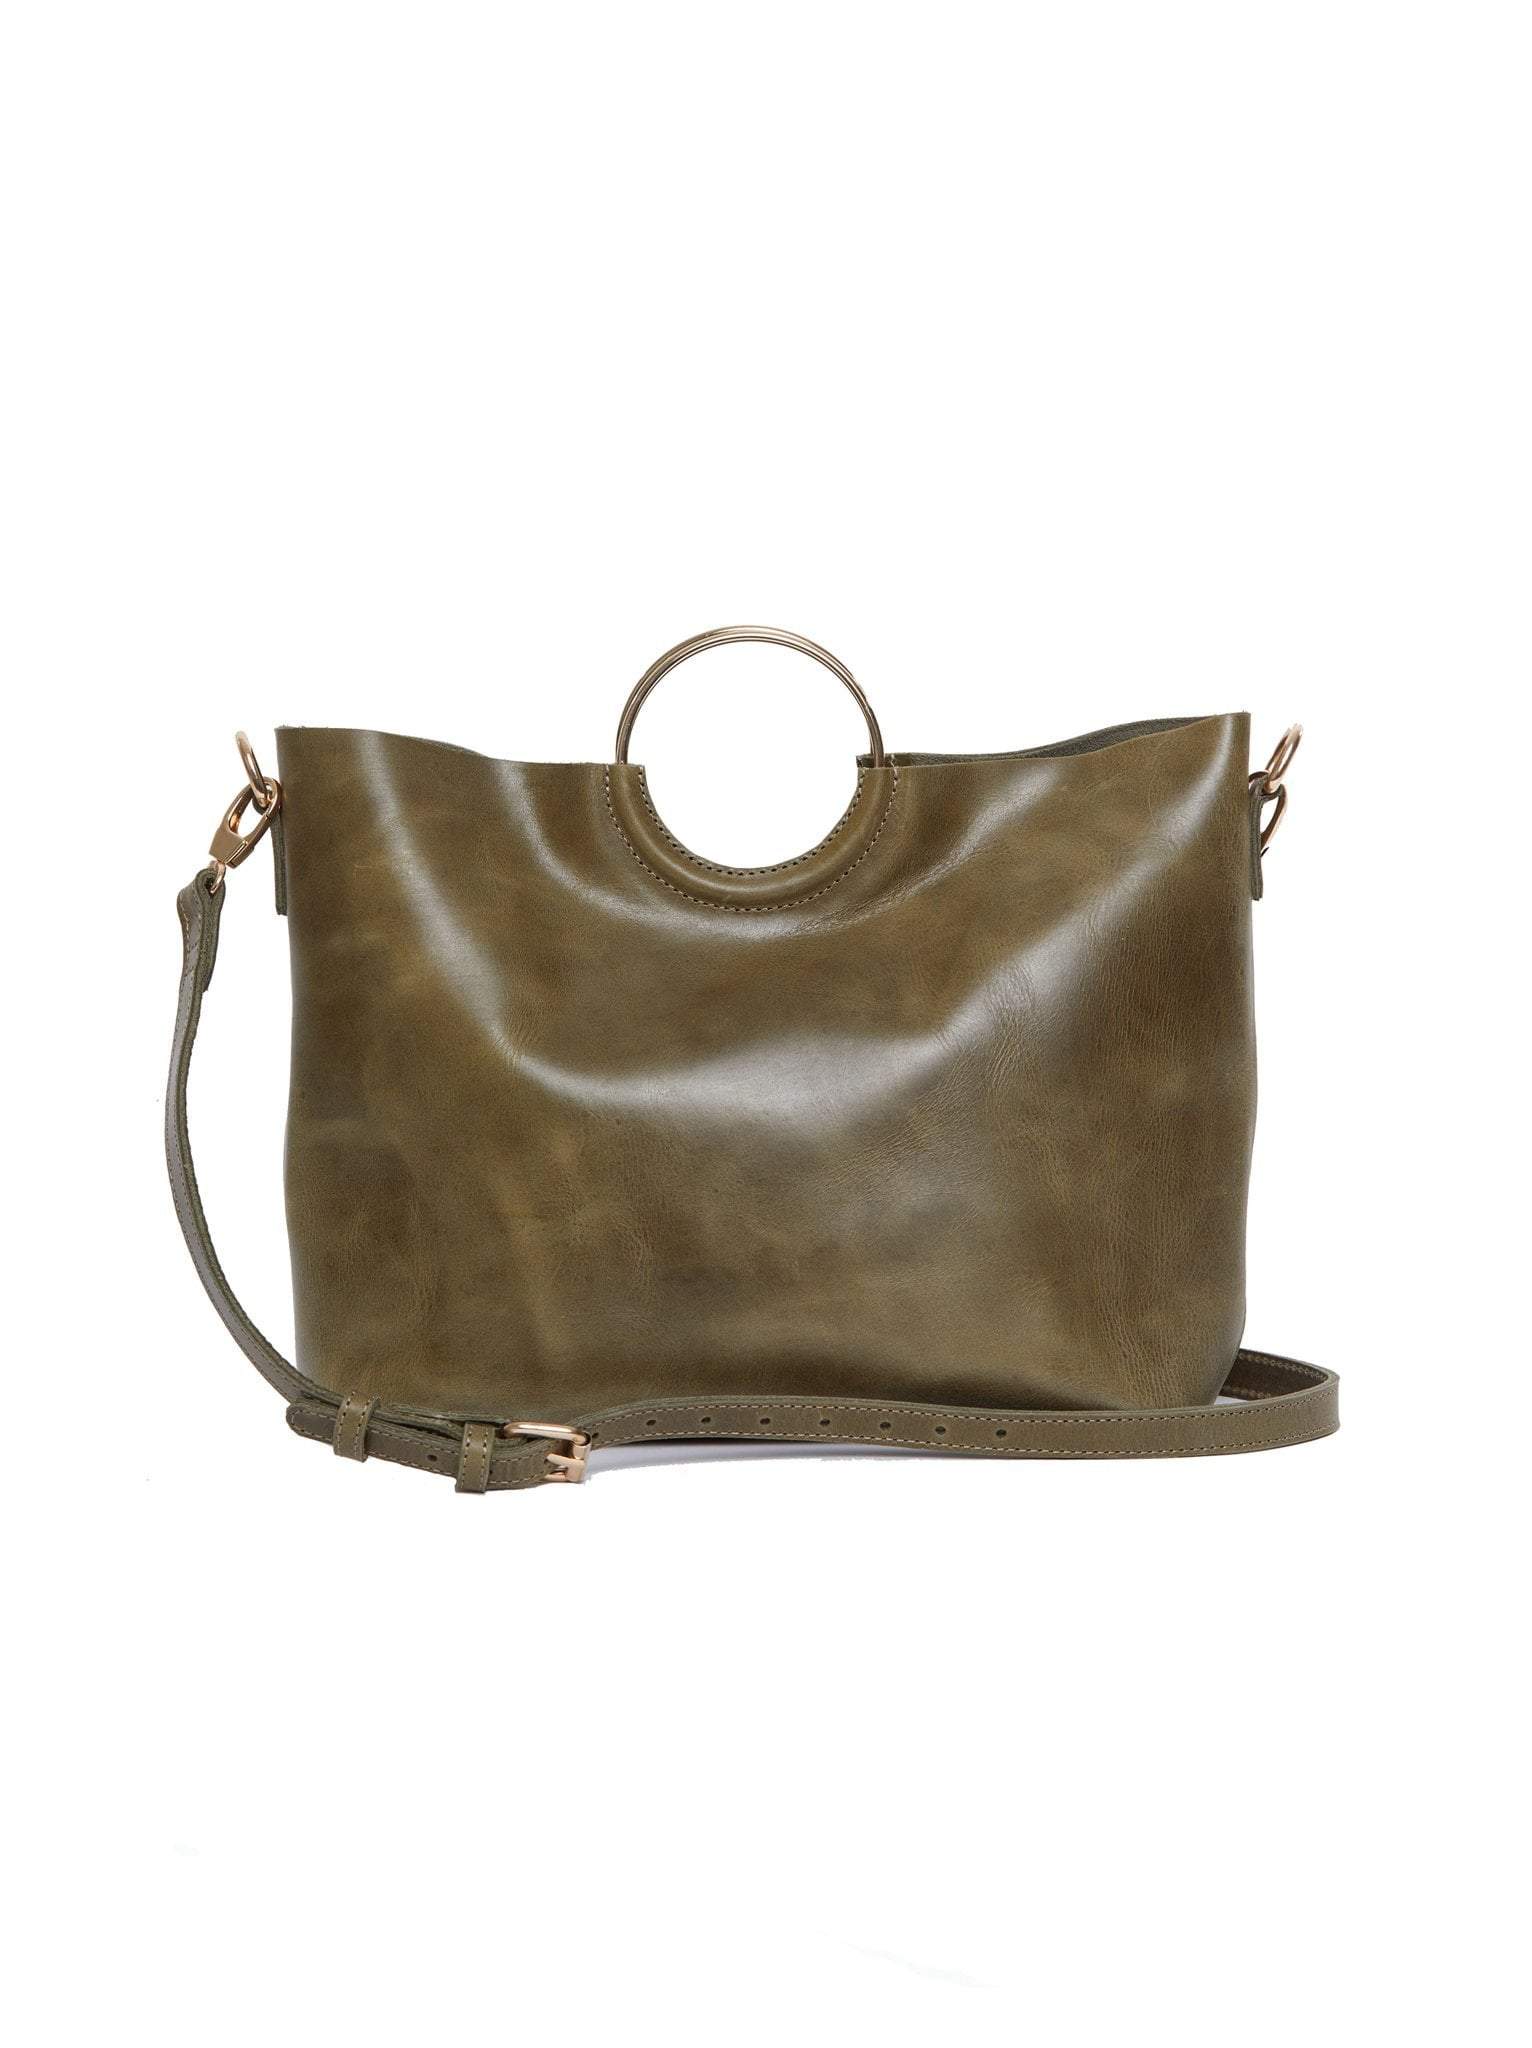 Fall Favorite Bags Fashionable Fozi Handbag